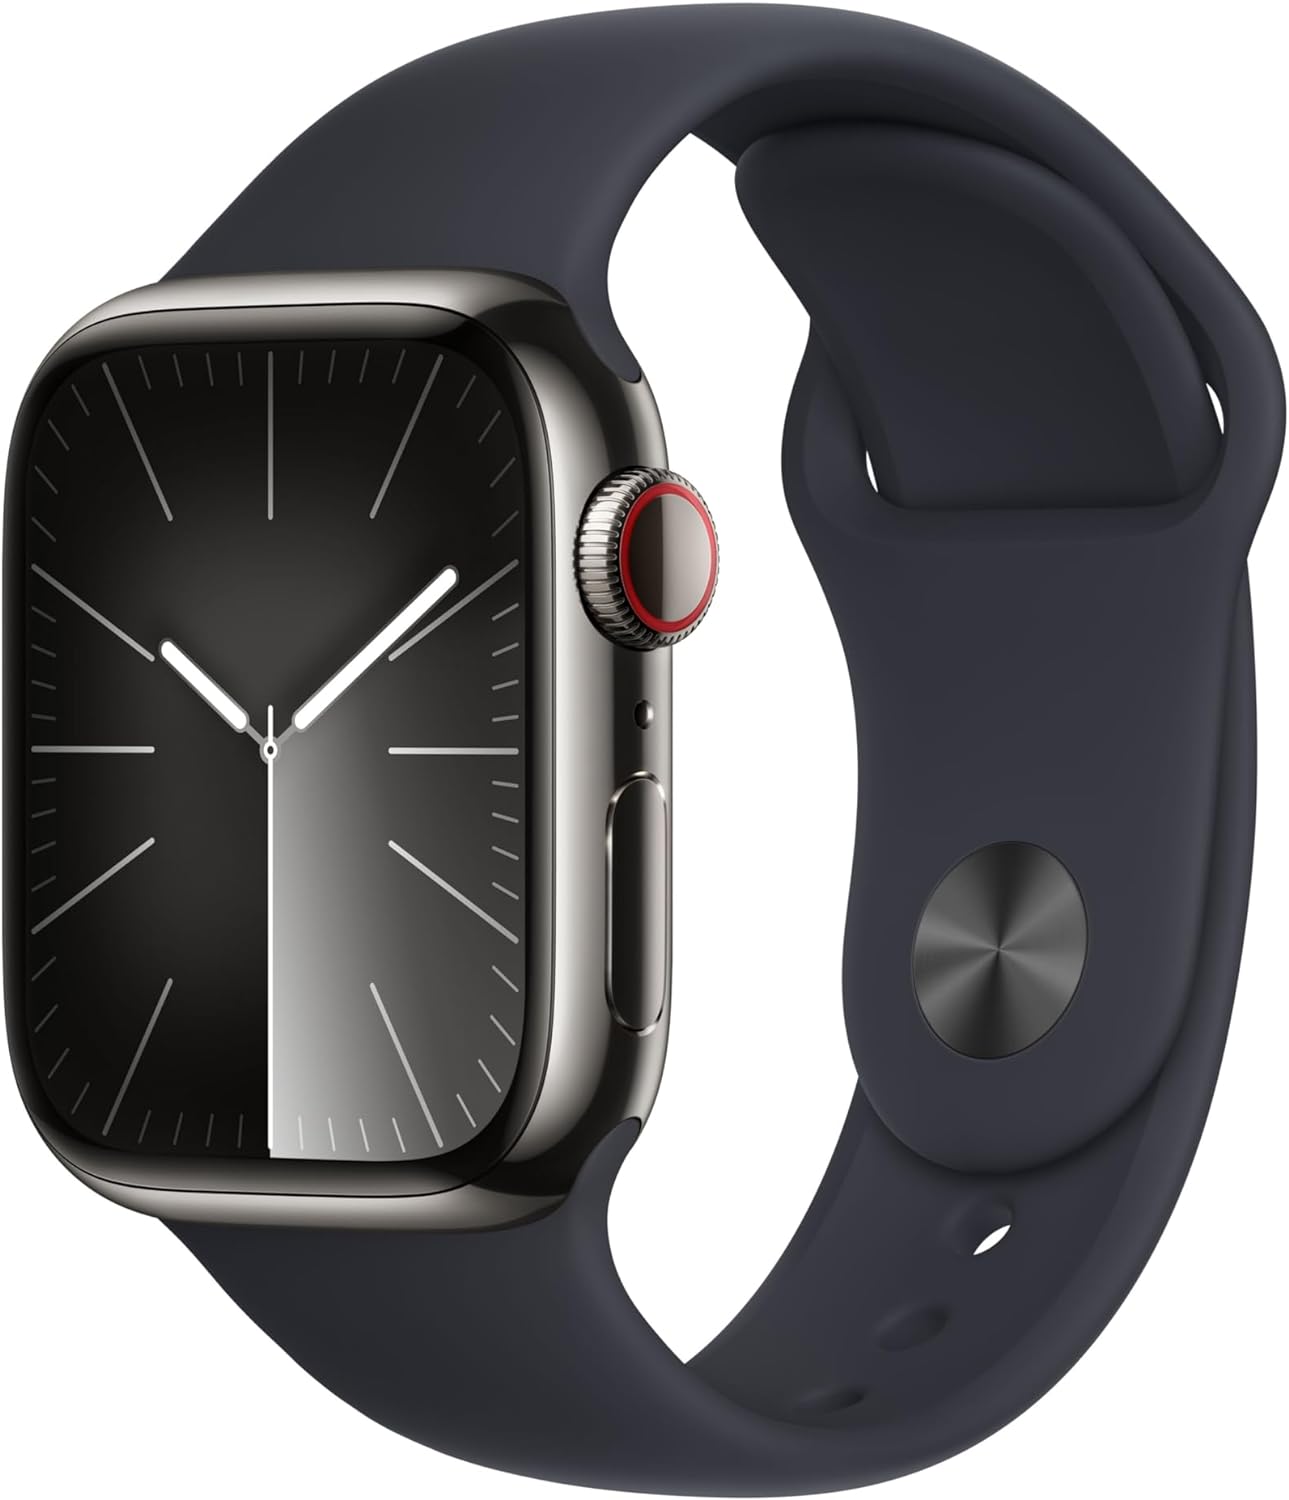 Apple Watch 9 versus Apple Watch 8